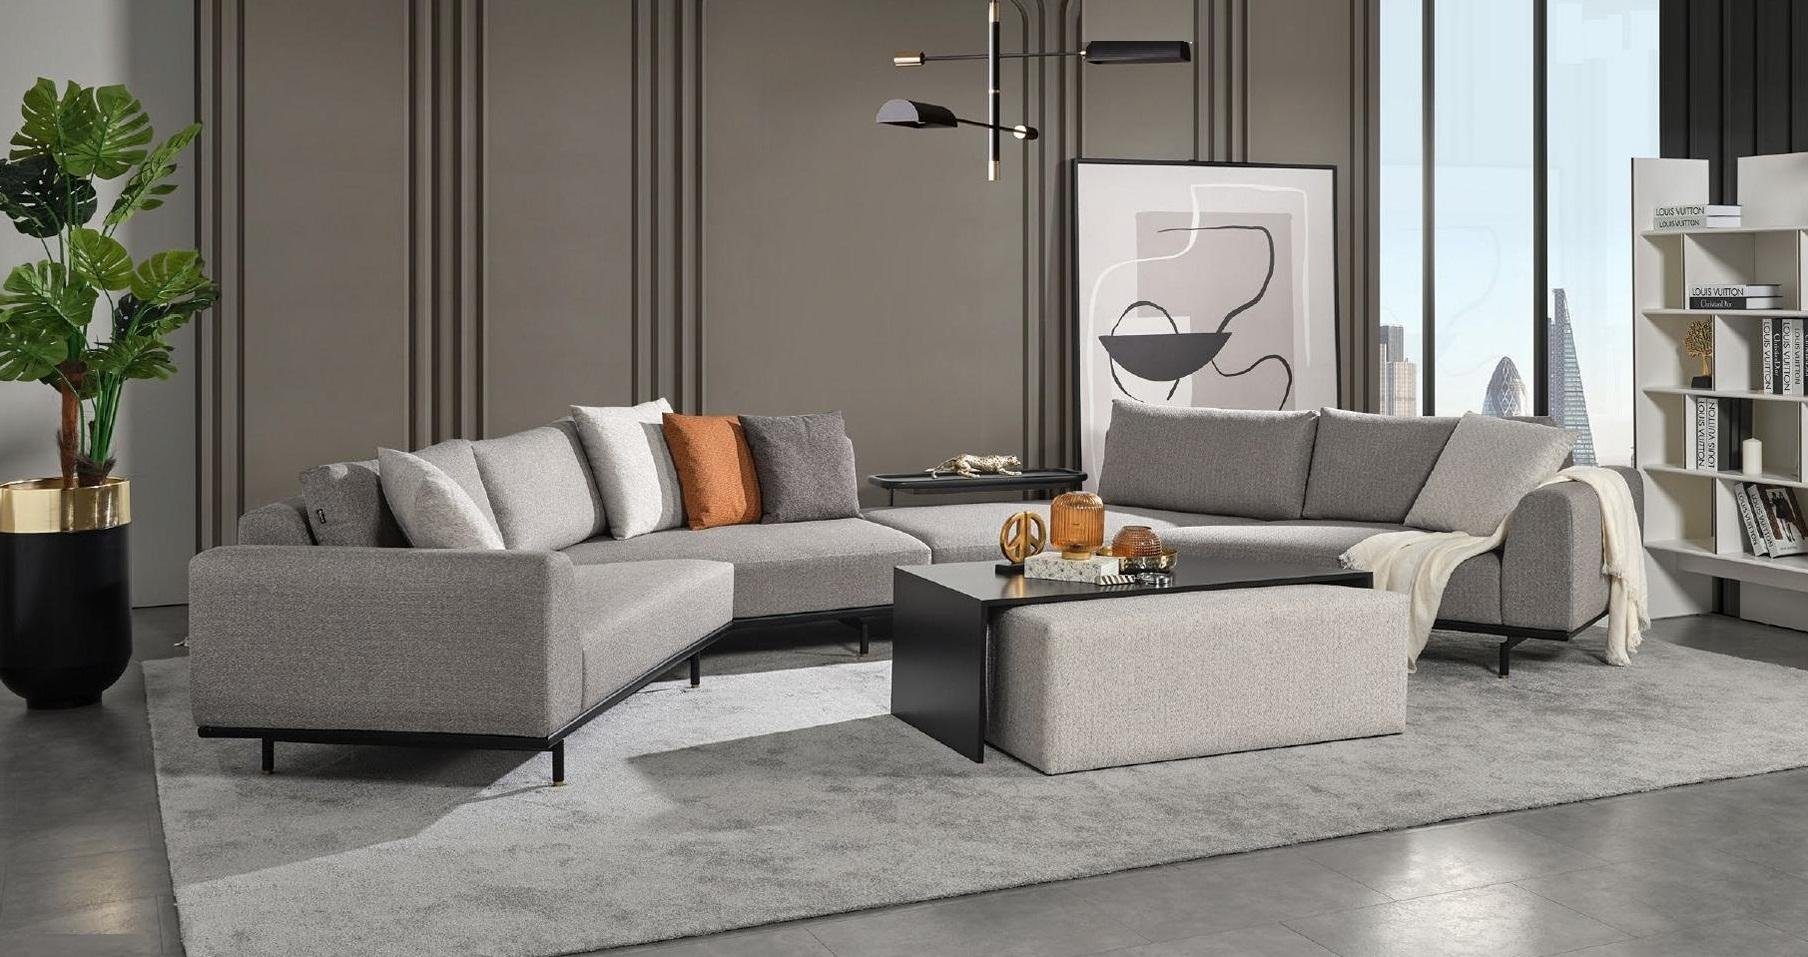 JVmoebel Ecksofa, Ecksofa Sofa Couch Textil Wohnlandschaft Luxus Moebel U Form